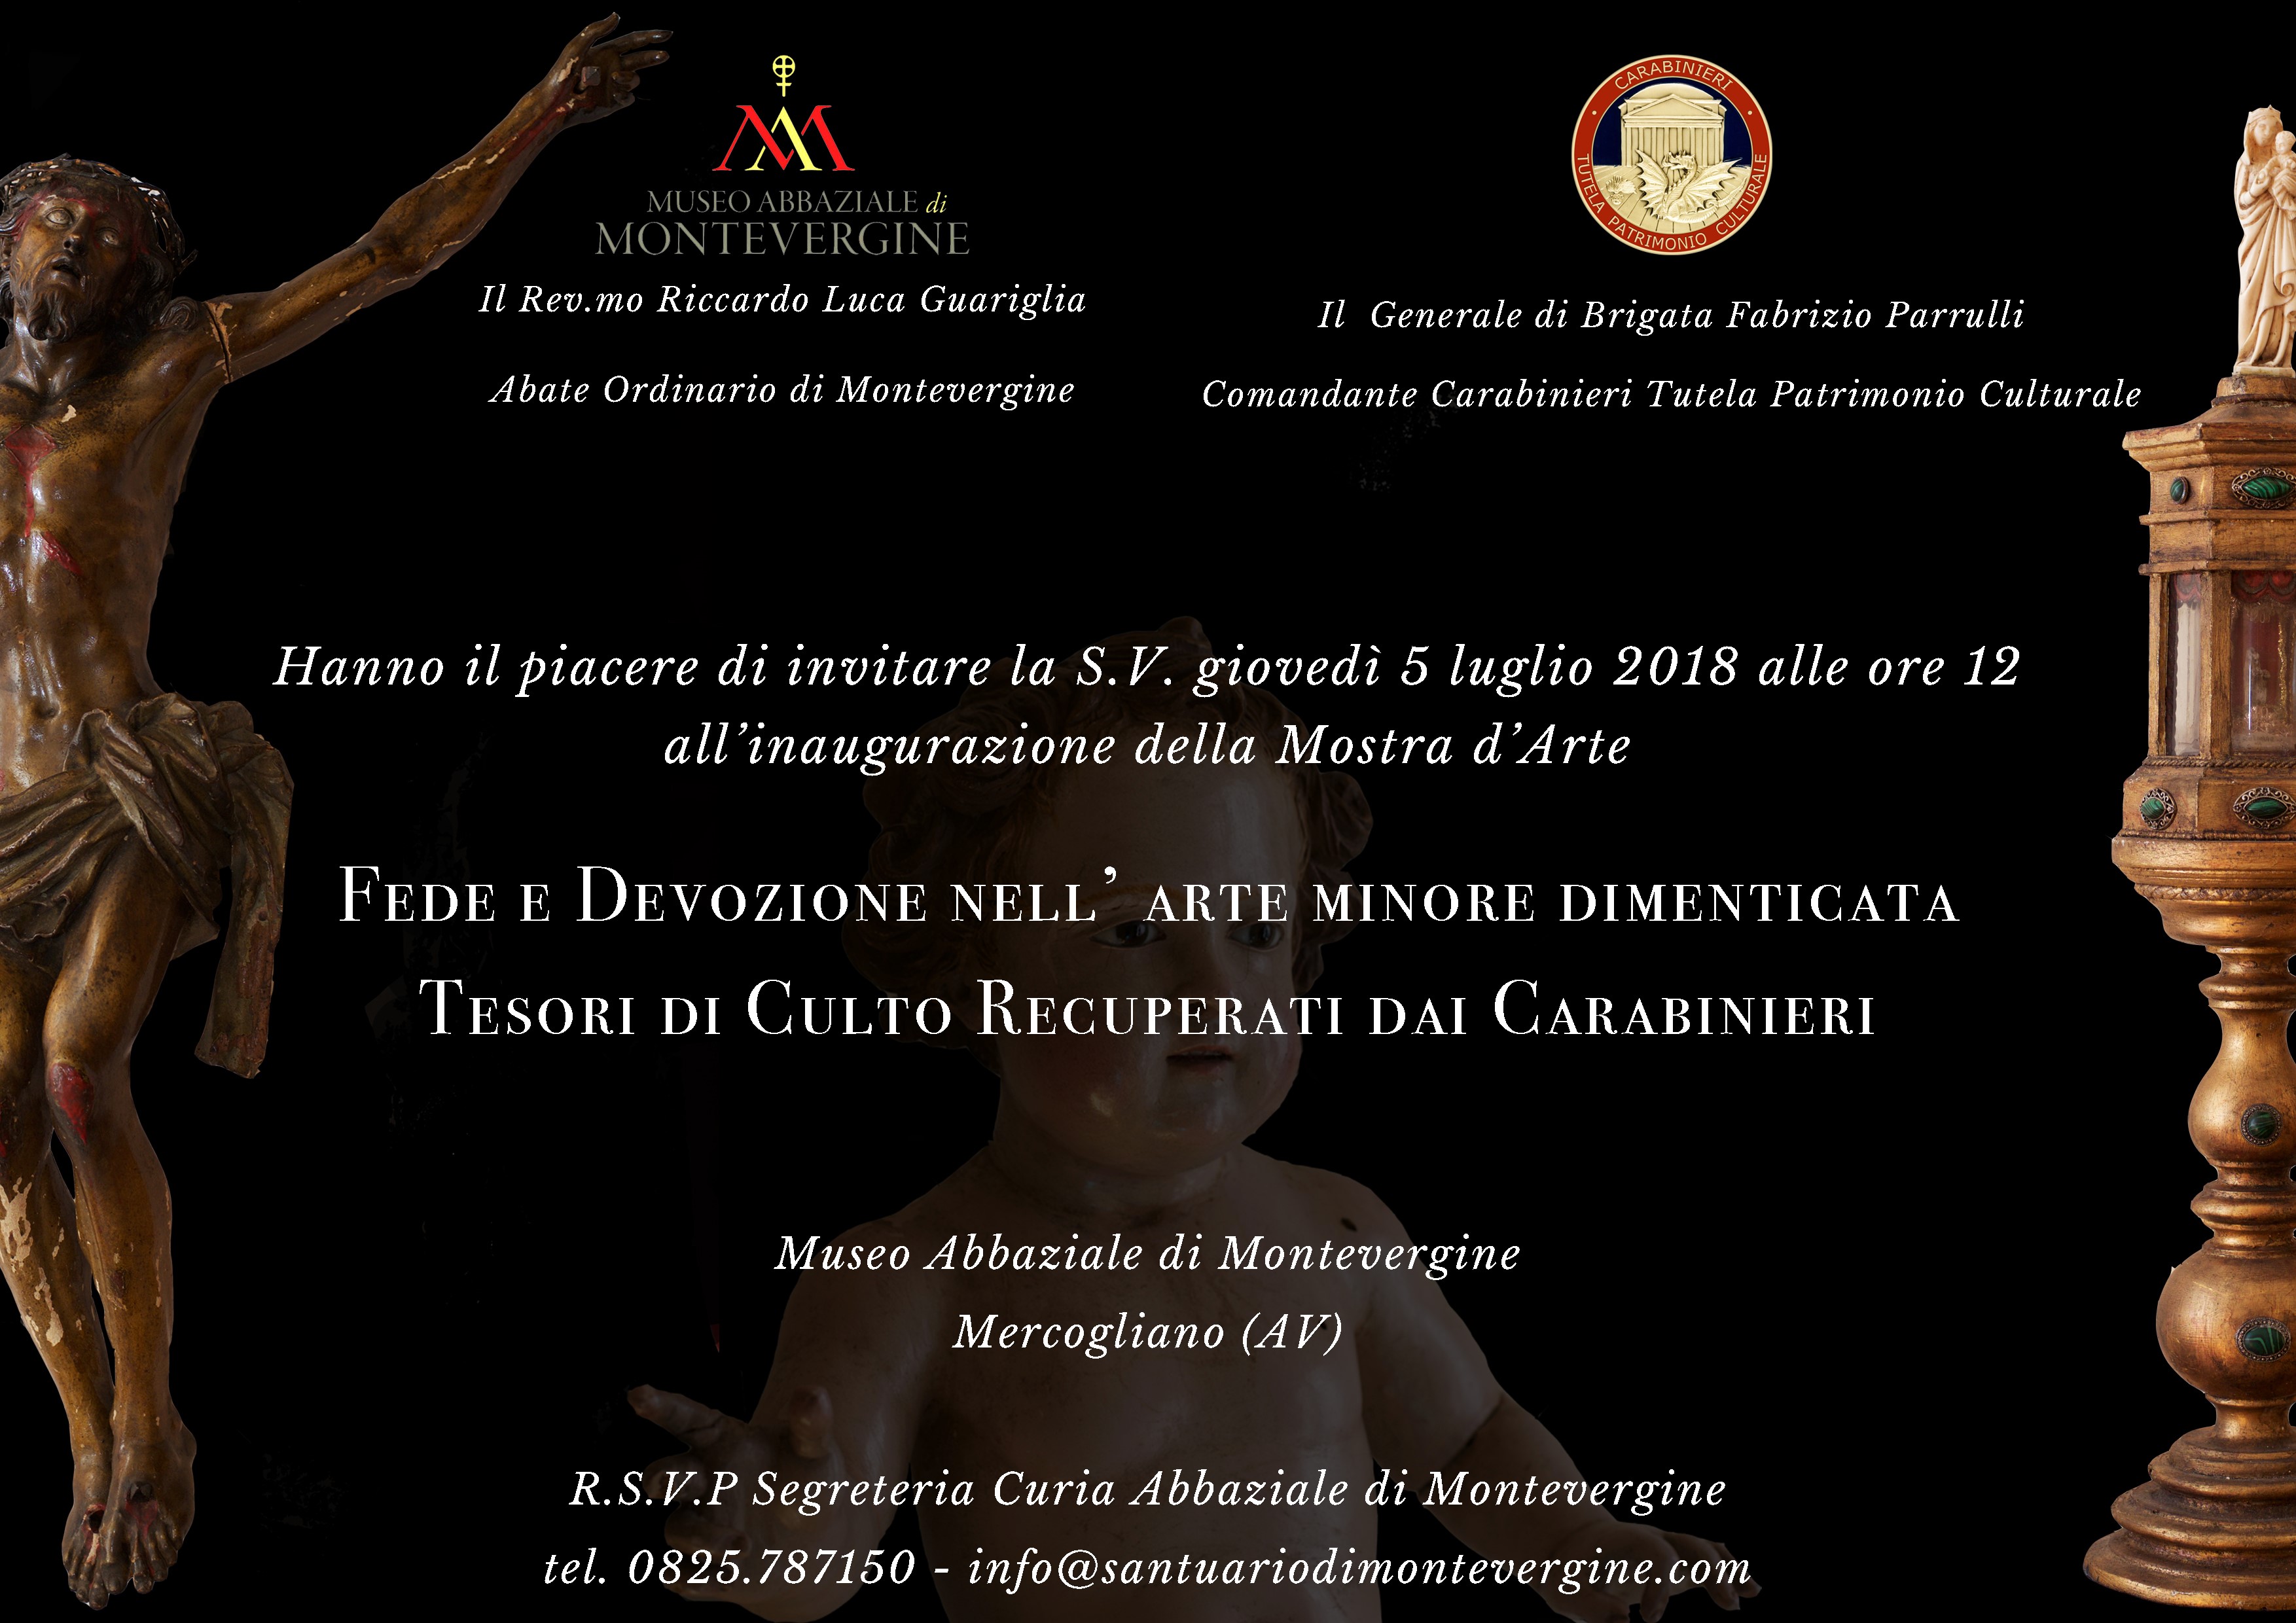 Mercogliano| Tesori di culto recuperati dai carabinieri, mostra all’Abbazia di Montevergine